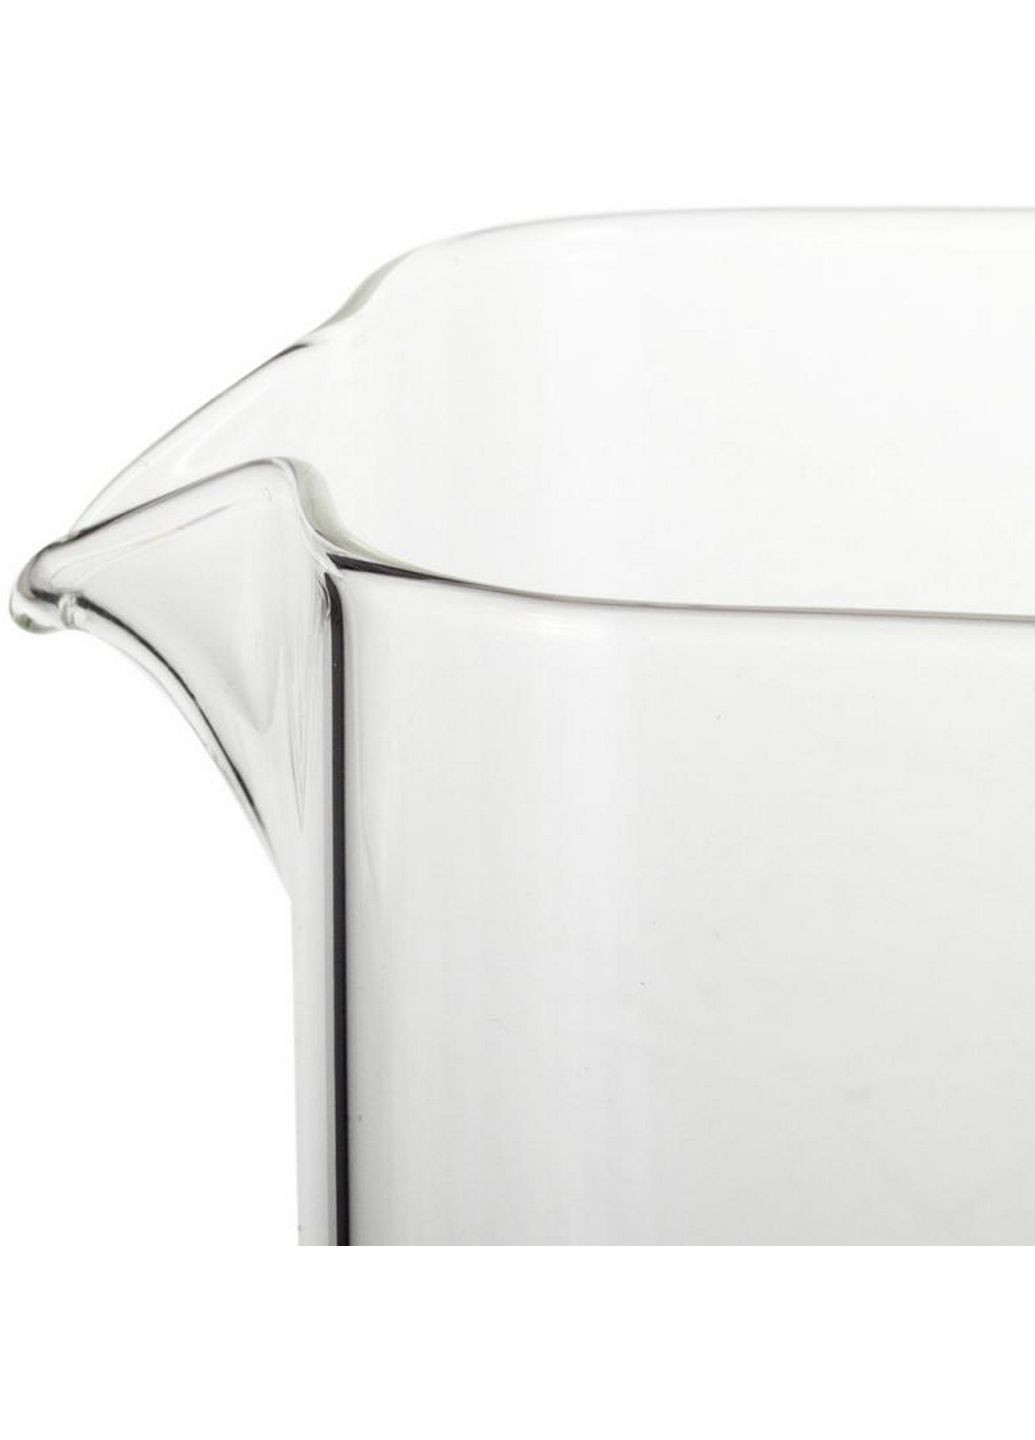 Чайник скляний заварювальний зі знімним ситечком Ofenbach (282583479)